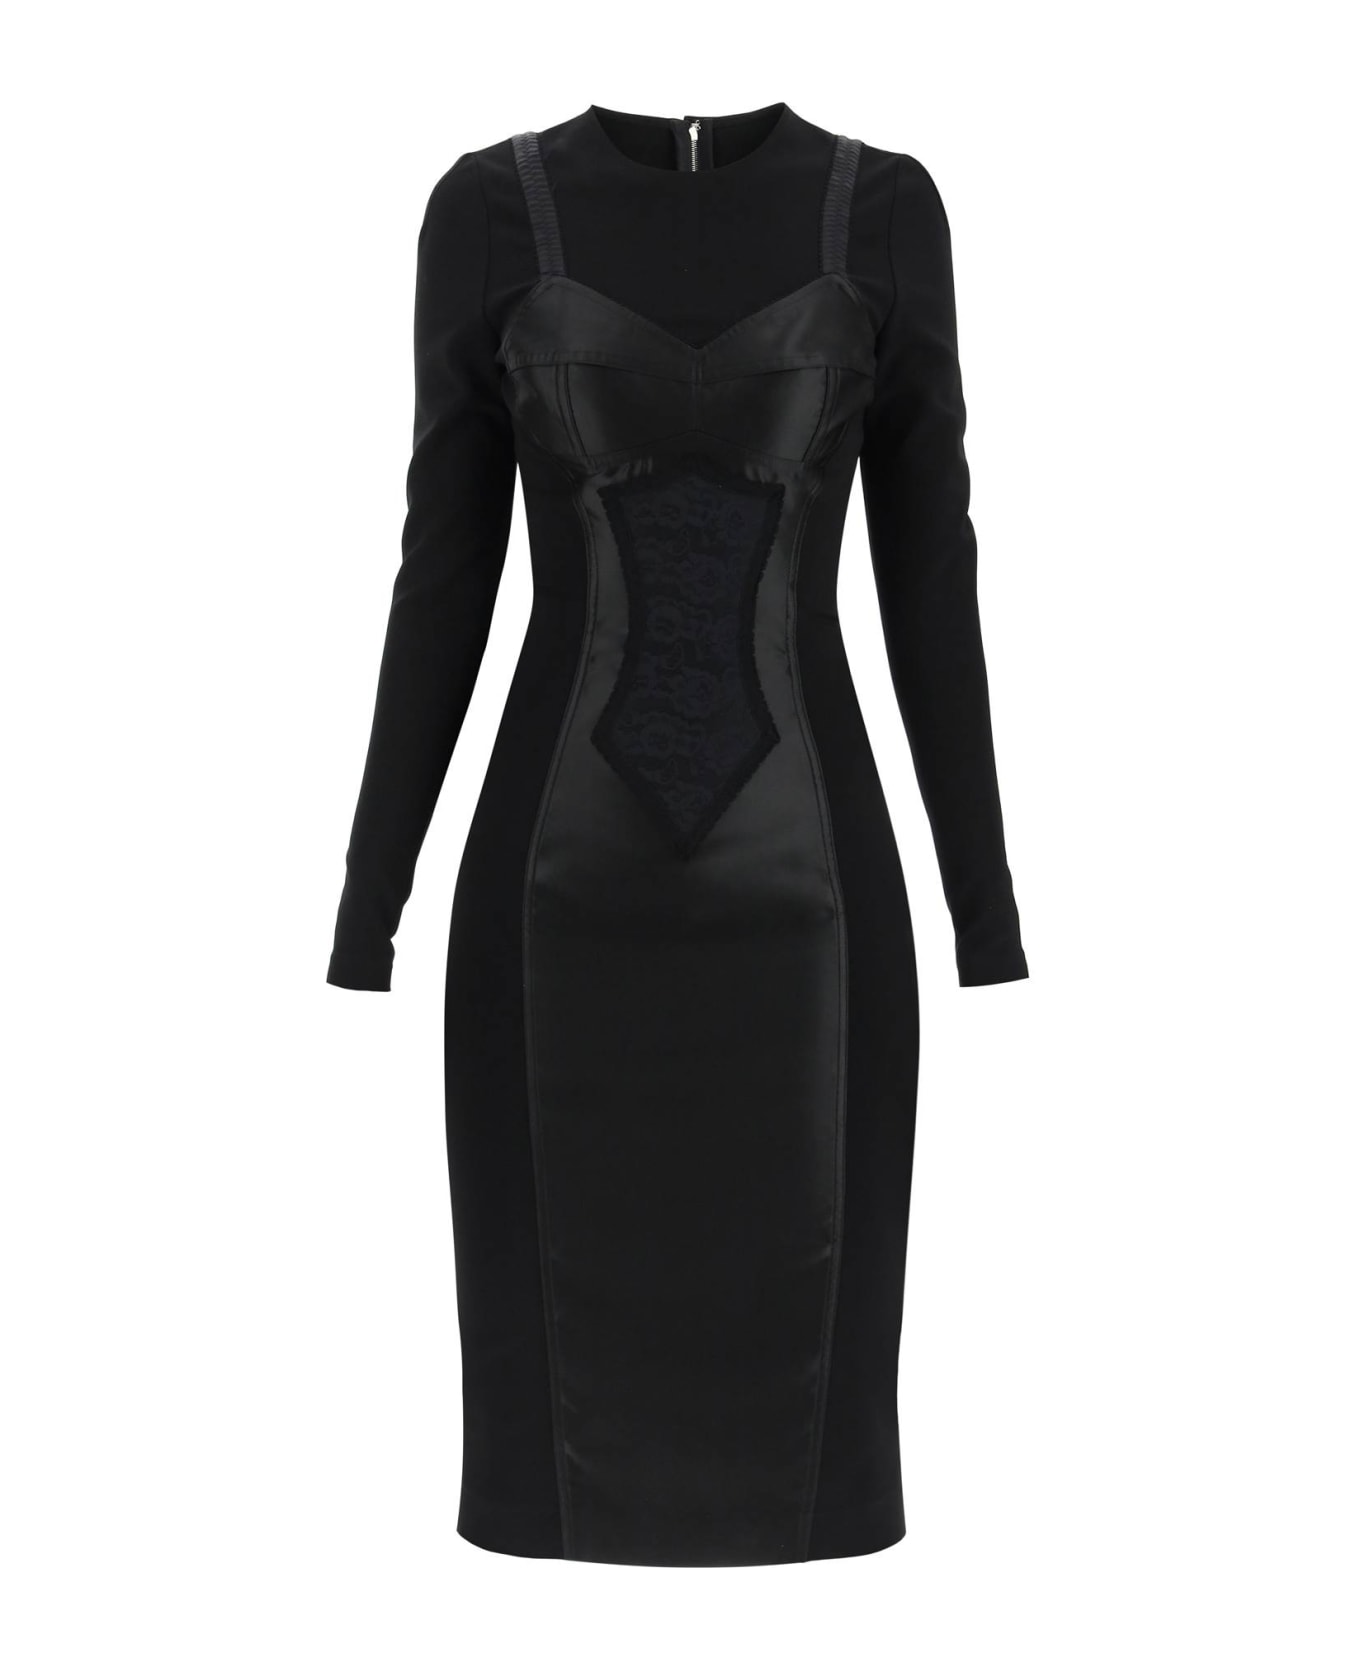 Dolce & Gabbana Sheath Dress - Black